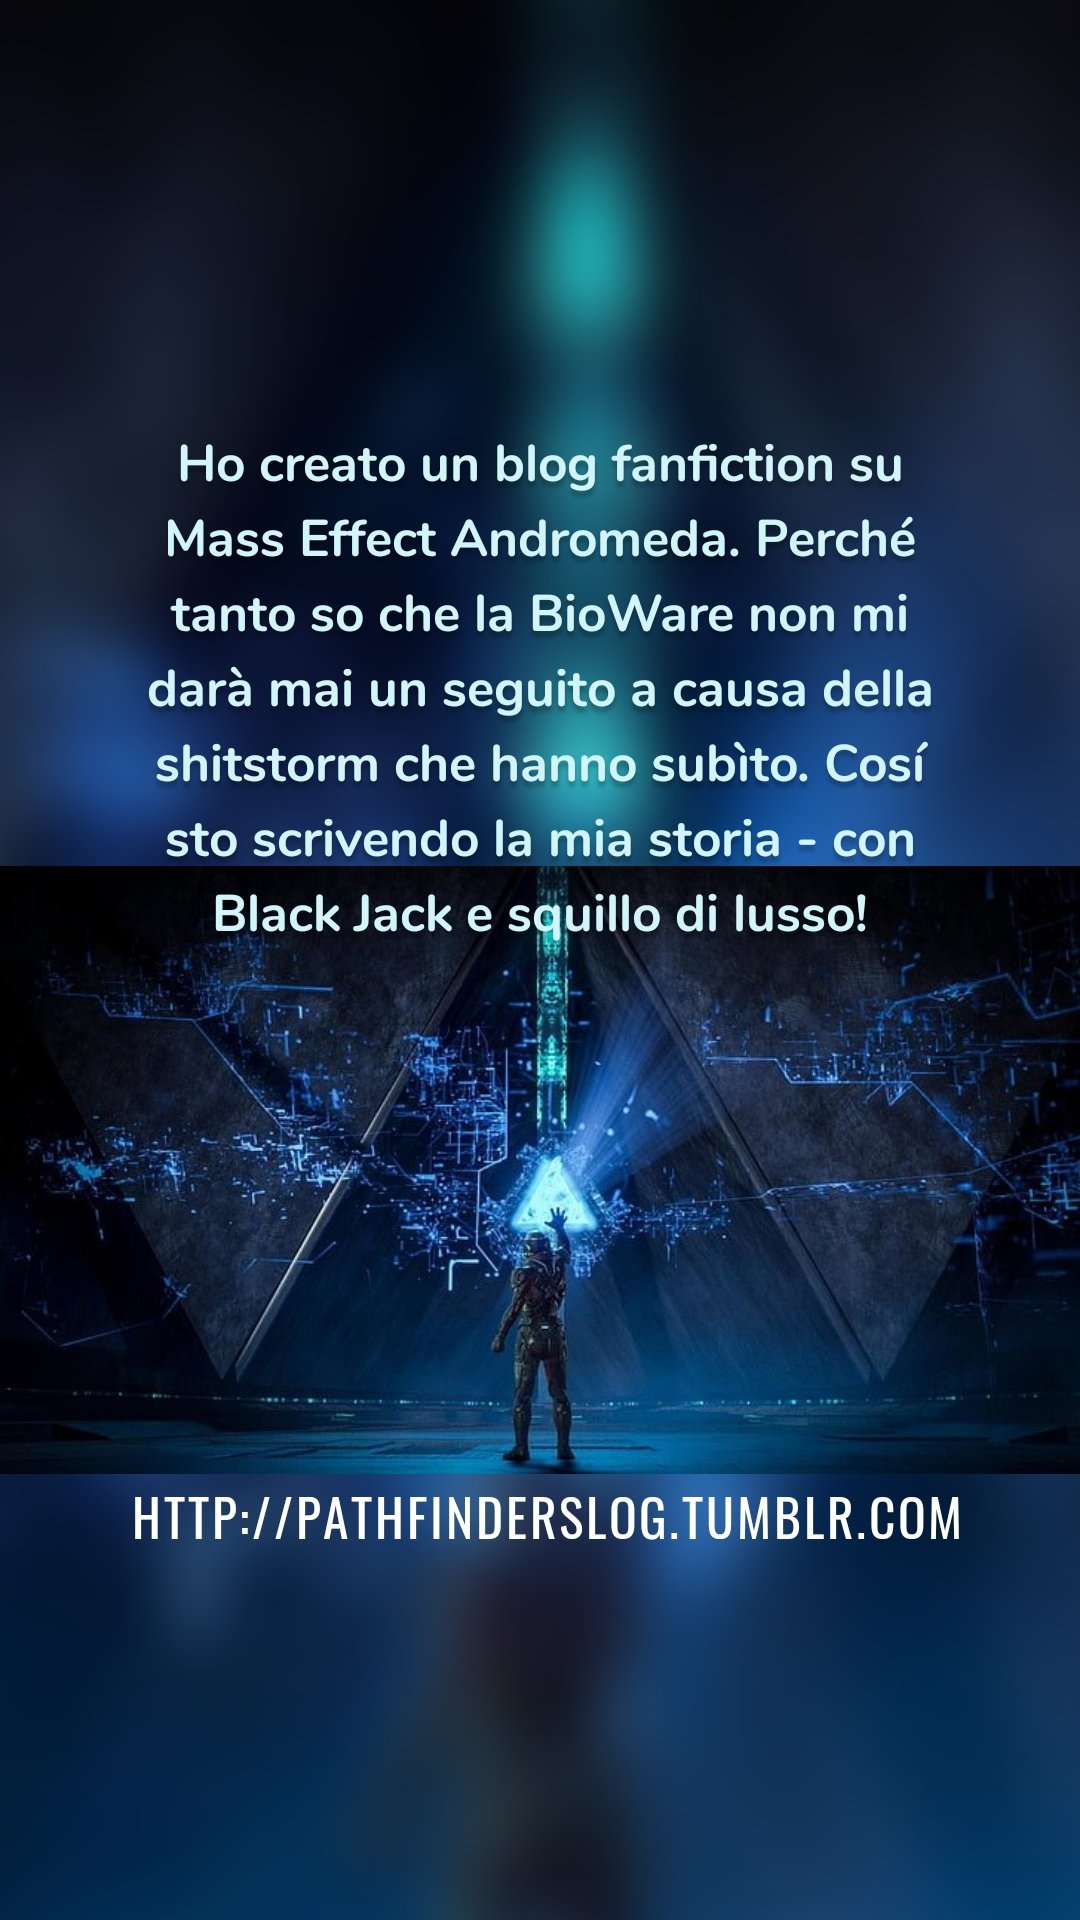 Ho creato un blog fanfiction su Mass Effect Andromeda. Perché tanto so che la BioWare non mi darà mai un seguito a causa della shitstorm che hanno subìto. Cosí sto scrivendo la mia storia - con Black Jack e squillo di lusso! http://pathfinderslog.tumblr.com